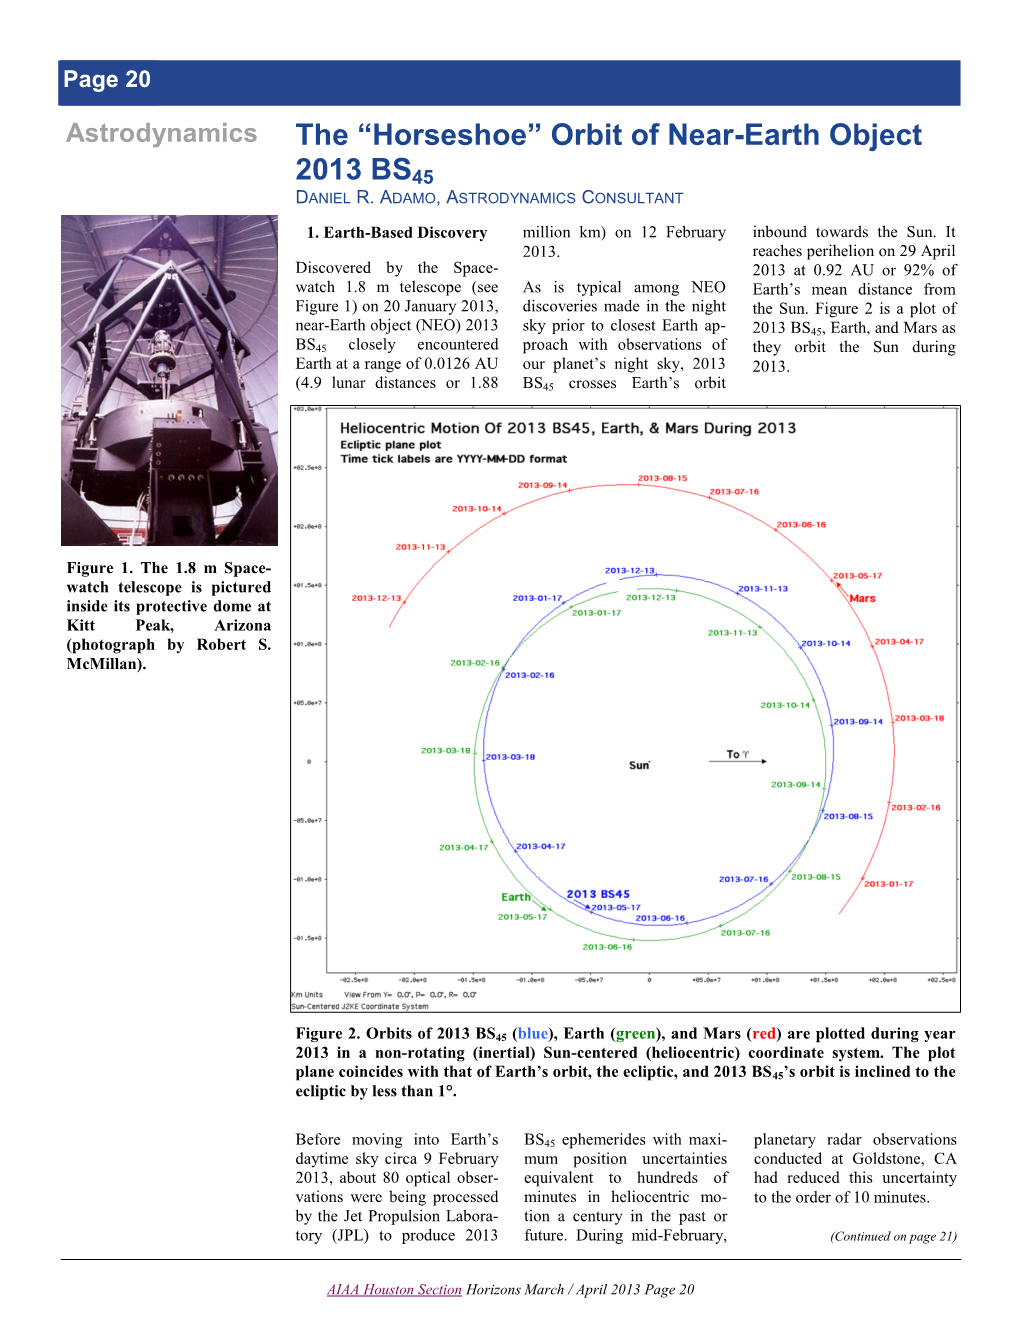 The “Horseshoe” Orbit of Near-Earth Object 2013 BS45 DANIEL R